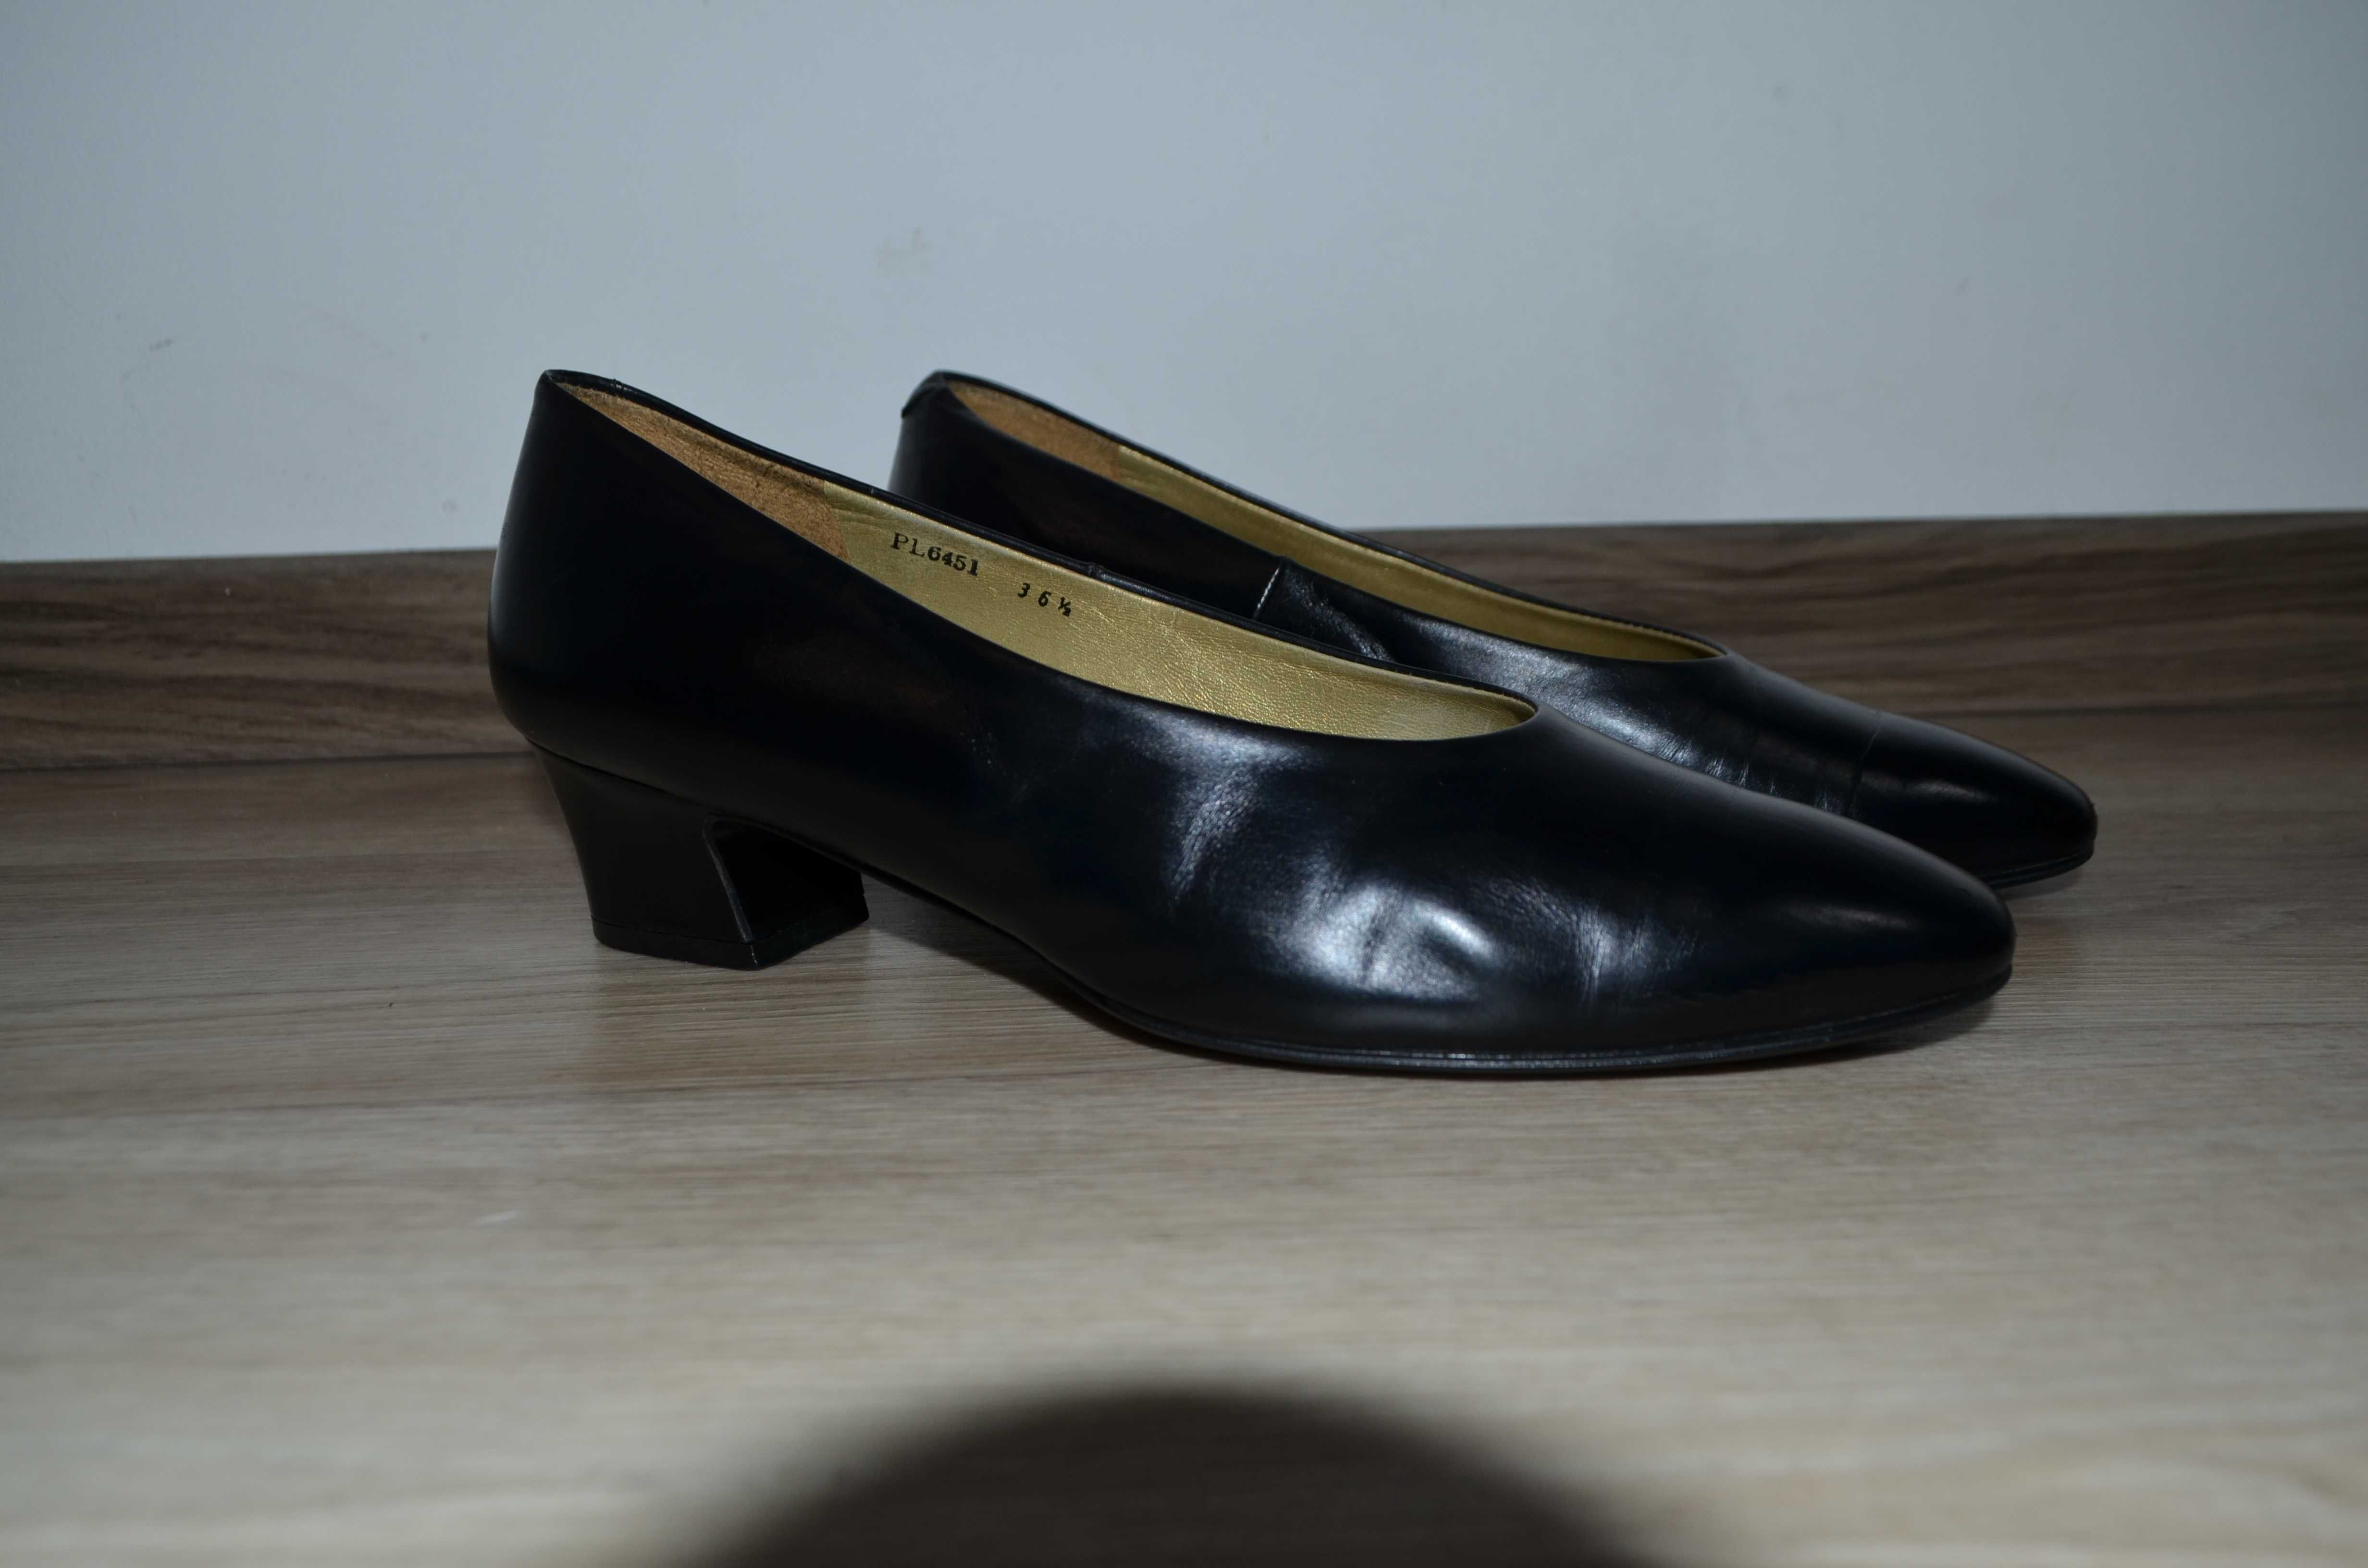 Yves Saint Laurent Pumps Women Low Heel Shoes Leather Vintage Р.36 1/2